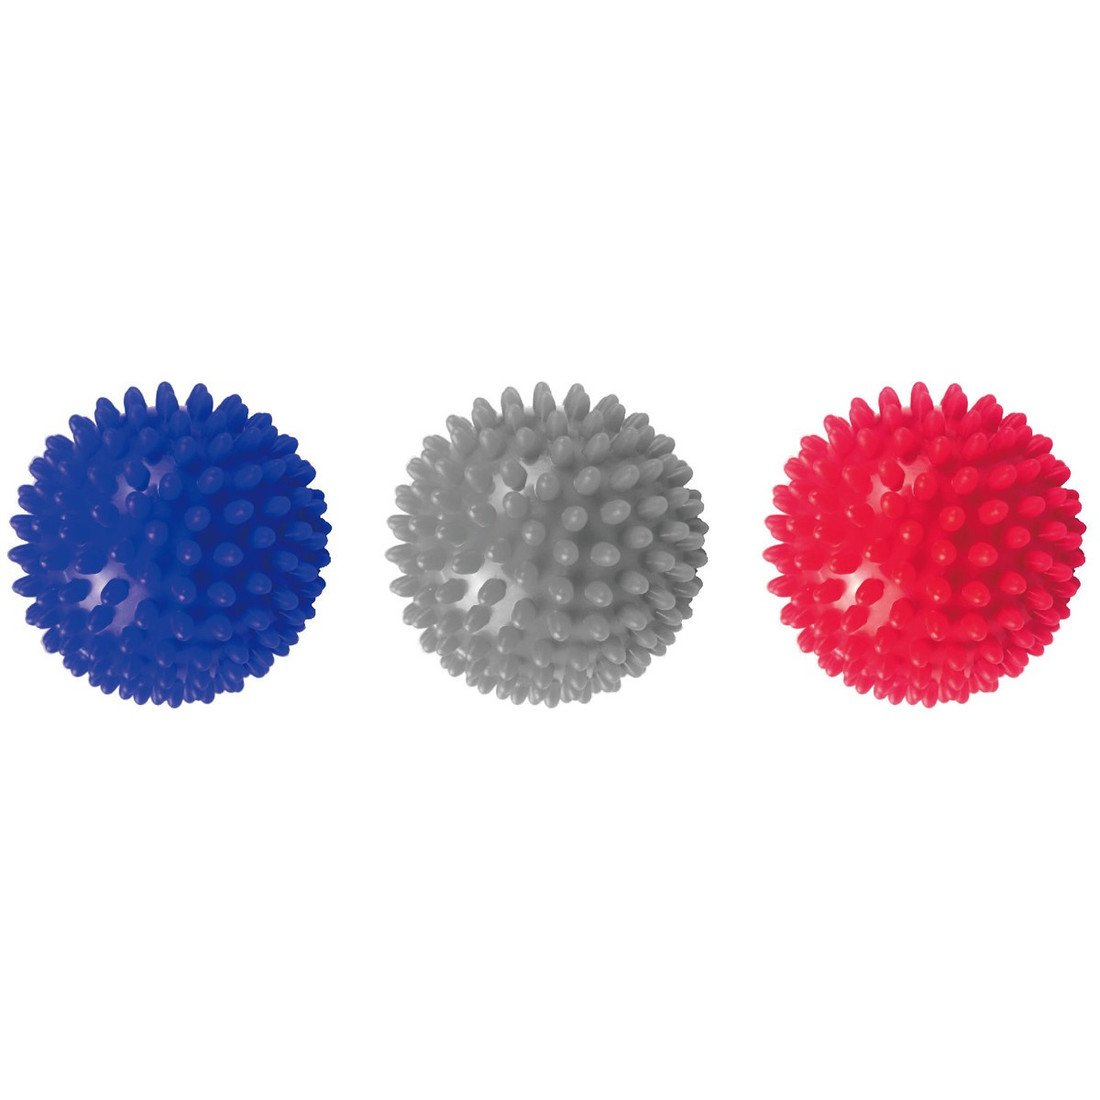 Masážní míčky ENERO FIT, 3 druhy